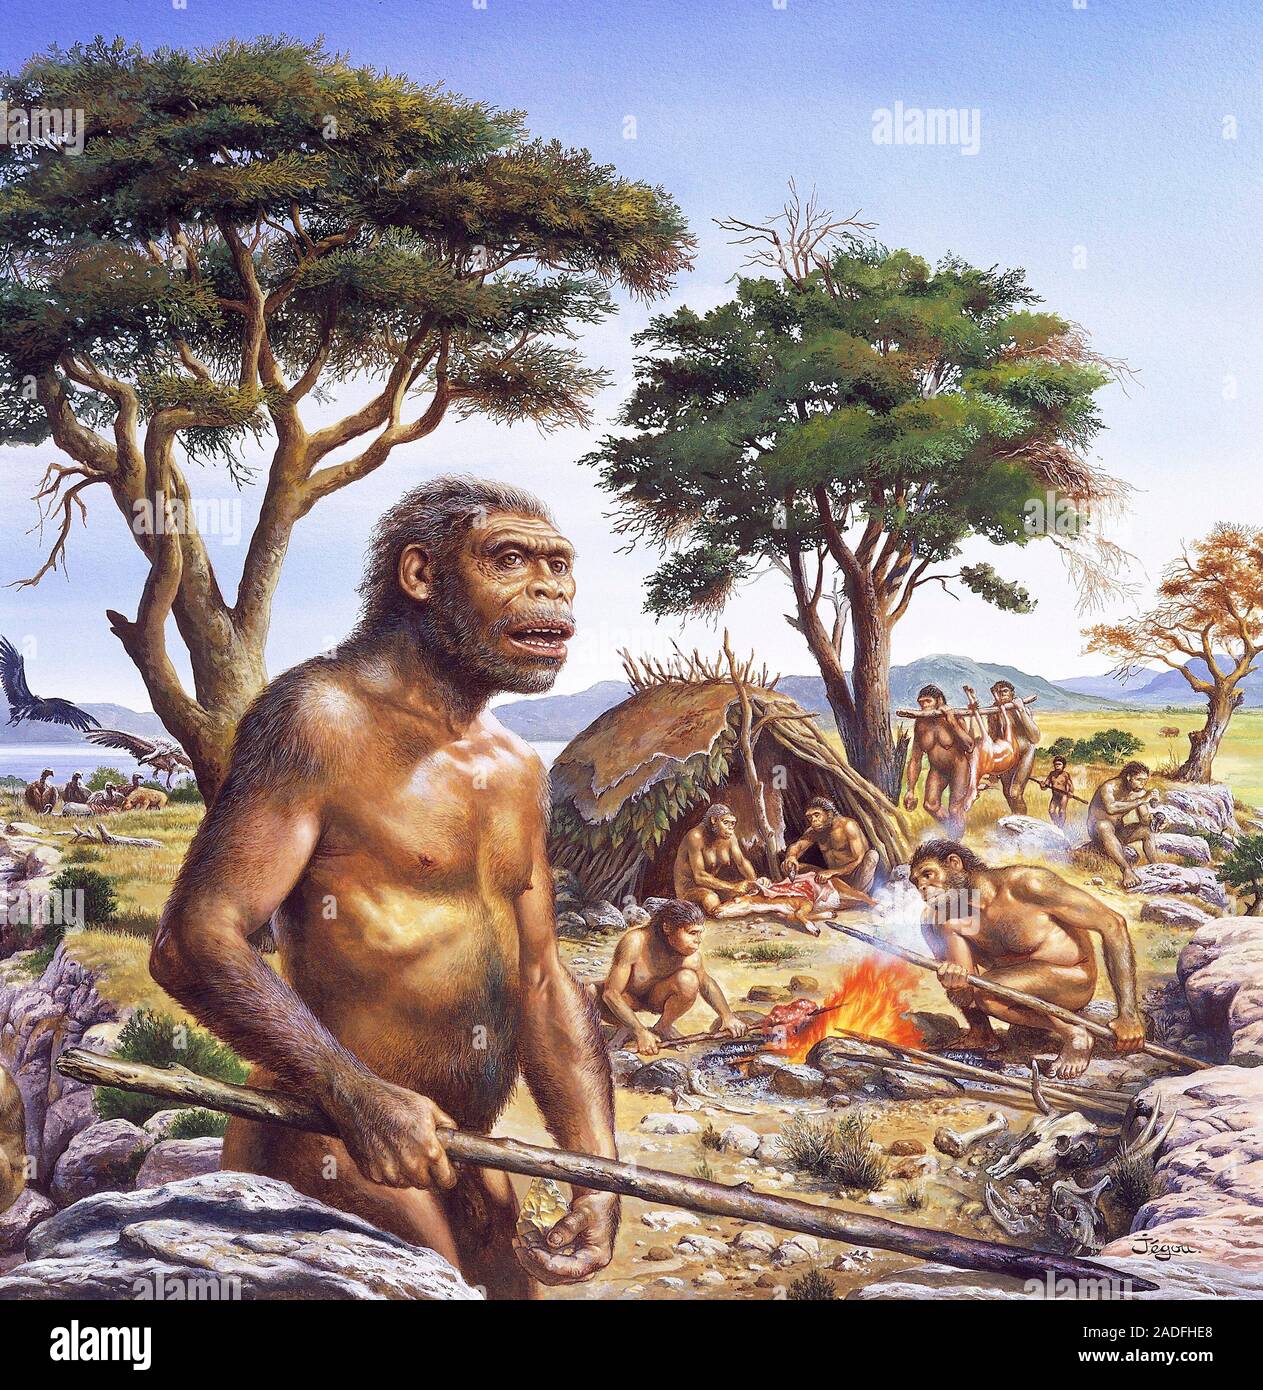 Предки людей жили на земле. Человек прямоходящий homo Erectus. Хомо хабилис эпоха. Архантропы (homo Erectus). Человек прямоходящий Африки homo Erectus.